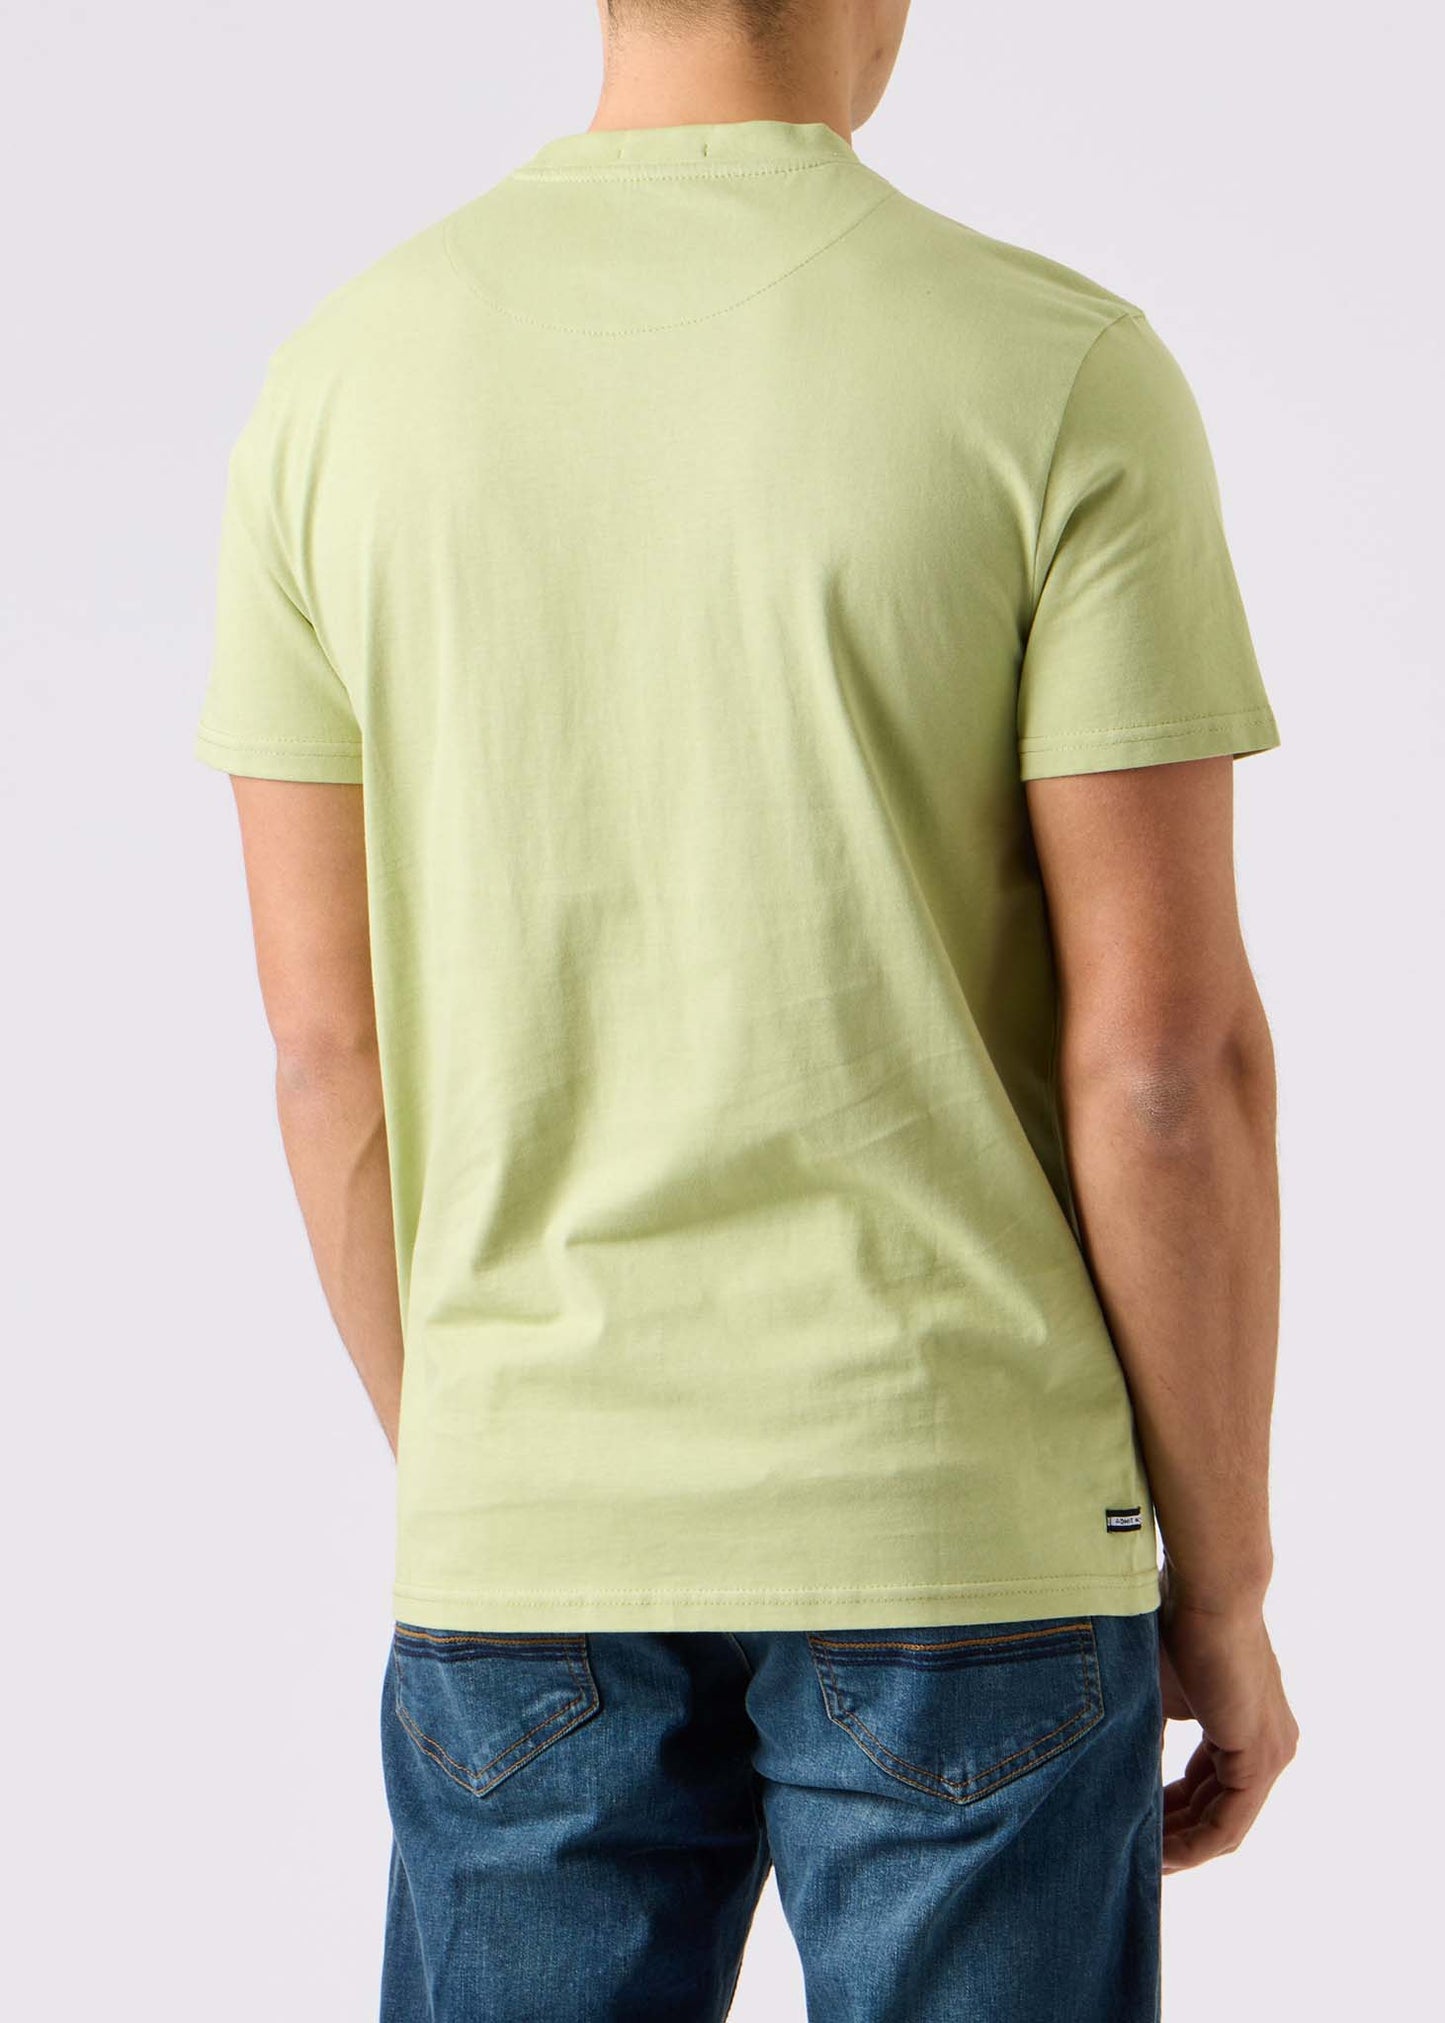 Weekend Offender t-shirt green groen